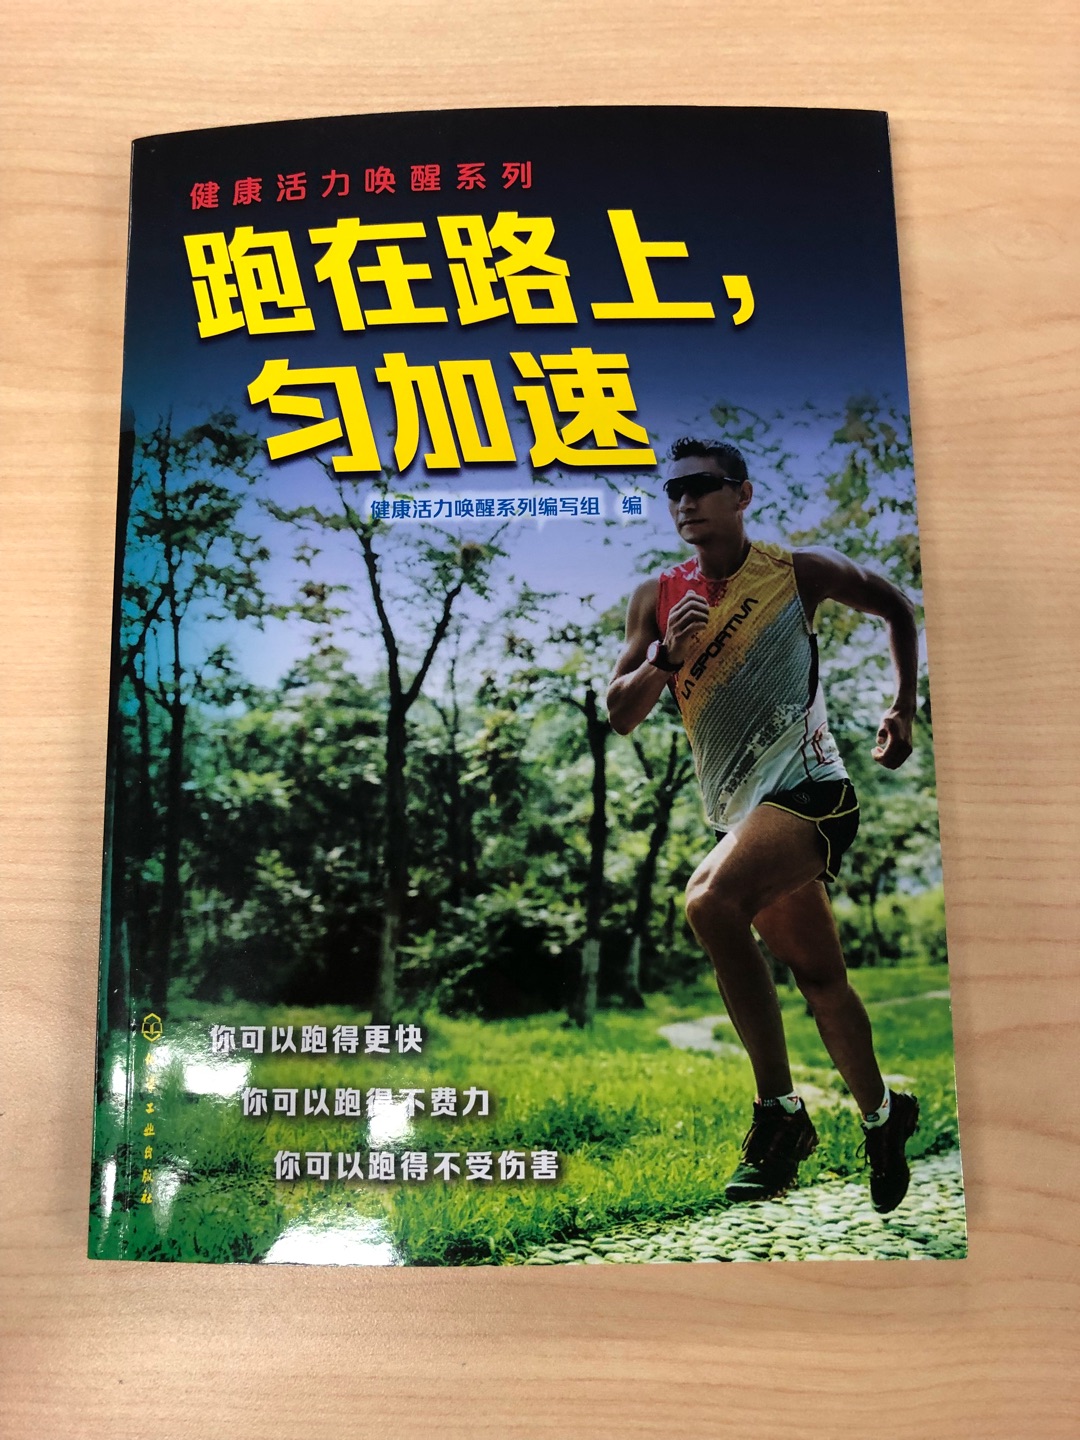 终于买到了启云教练的新书，我会用心去领会书里的讲解，科学跑步，愿我们跑得越来越好！